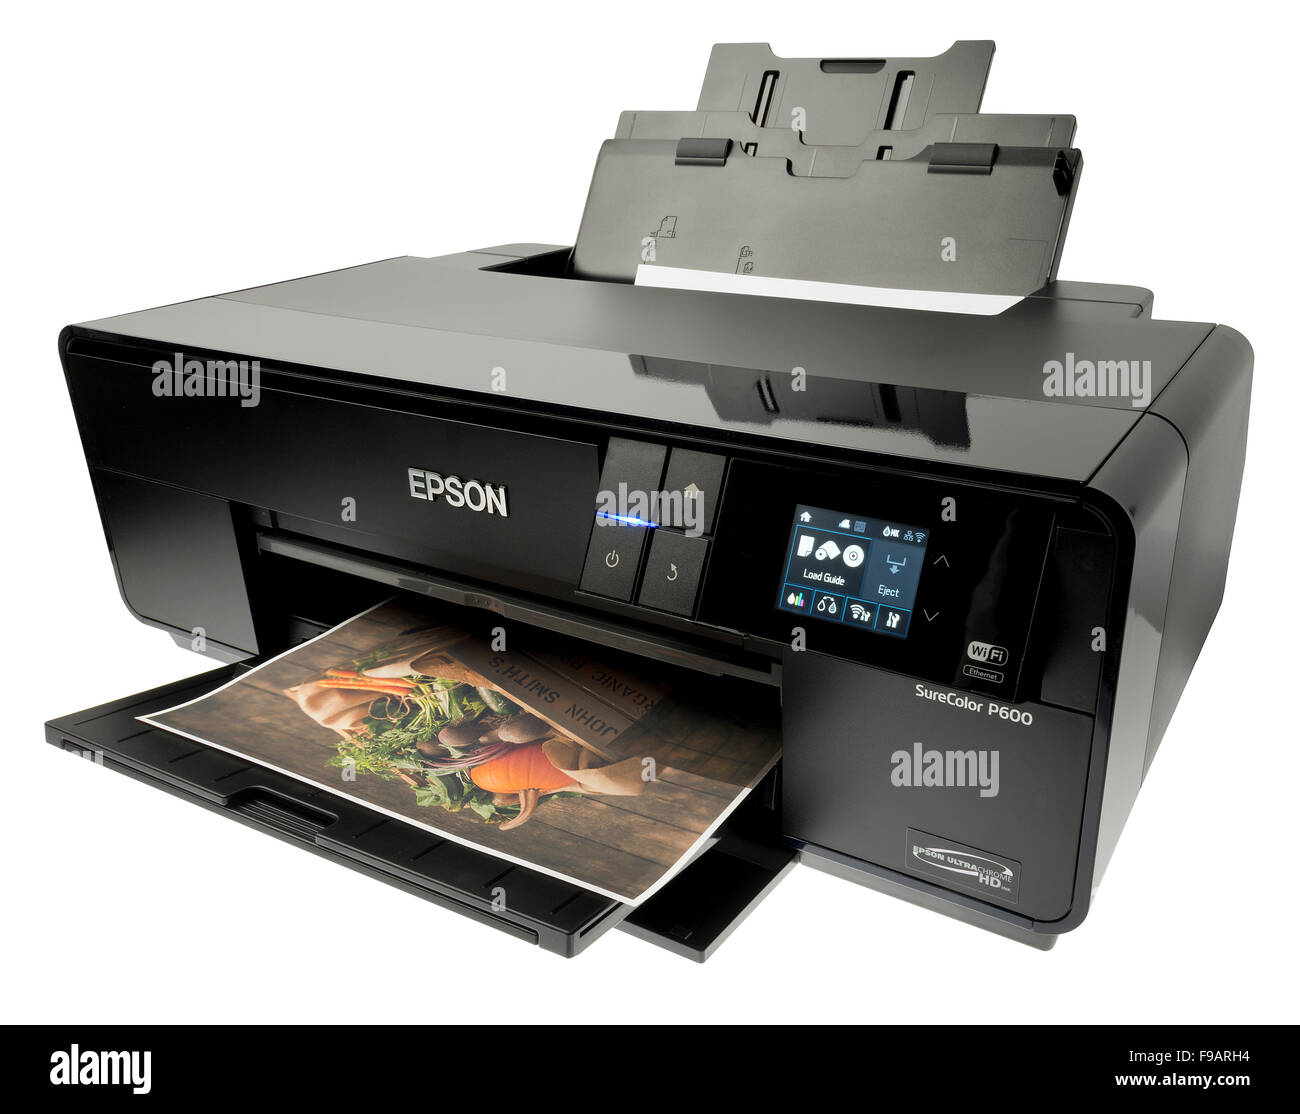 Epson printer immagini e fotografie stock ad alta risoluzione - Alamy